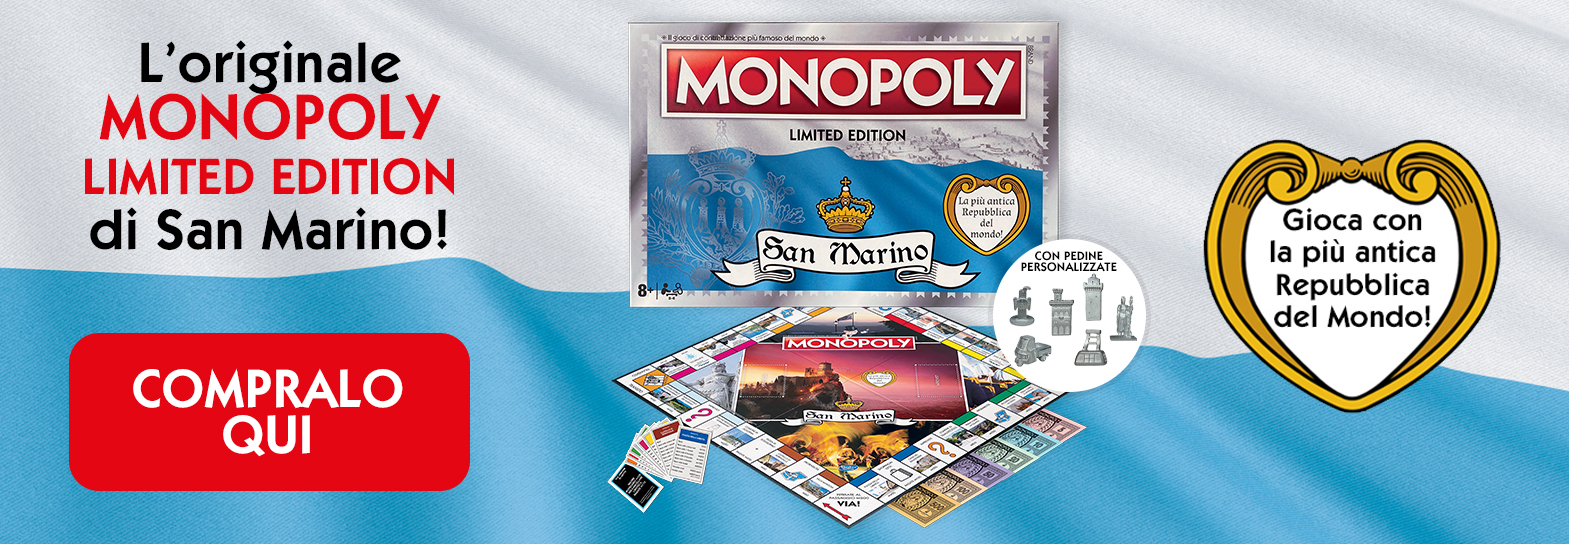 monopoly-generico-banner-sito-ita